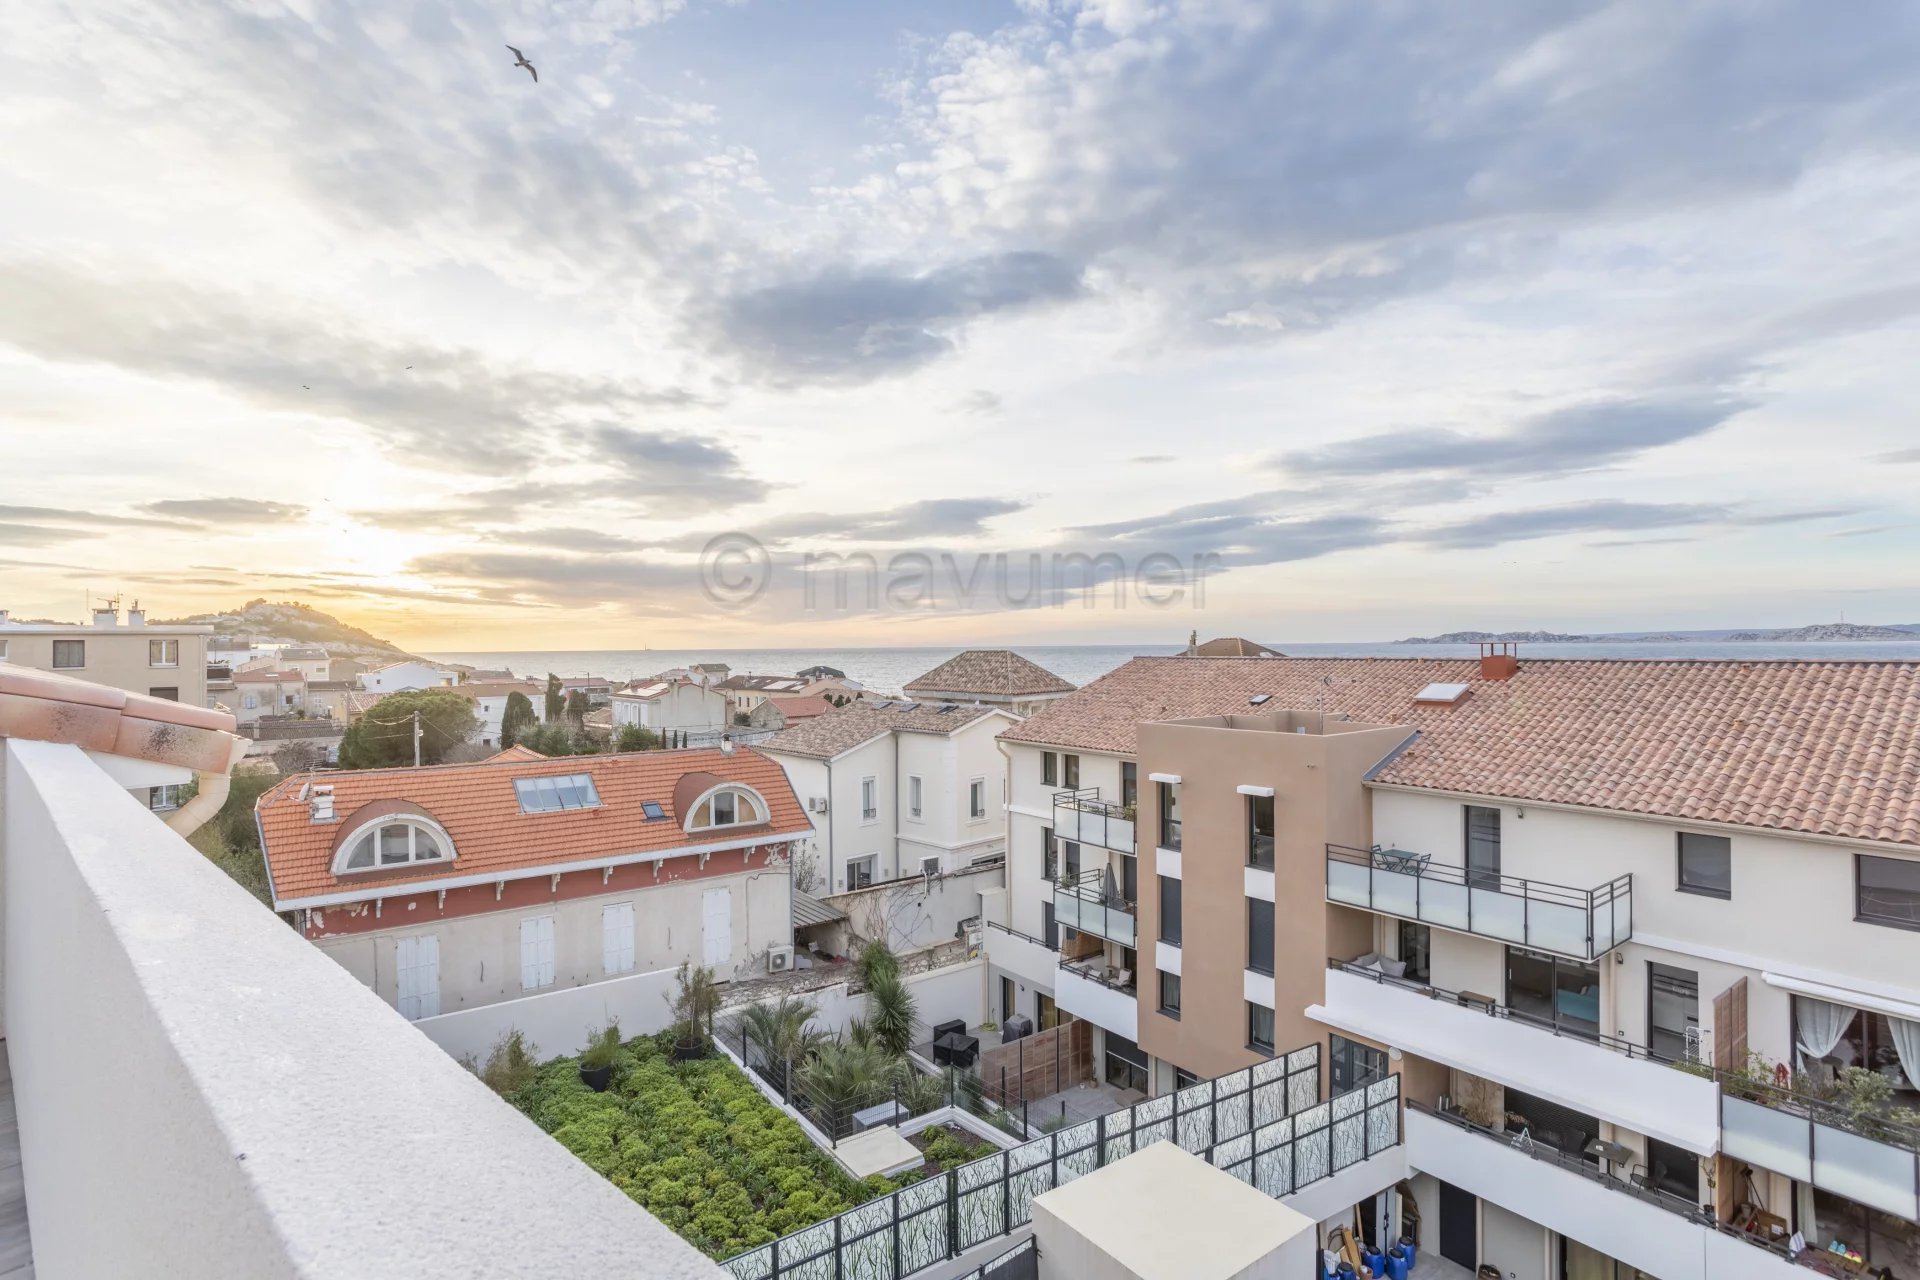 Sale Apartment - Marseille 8ème Montredon